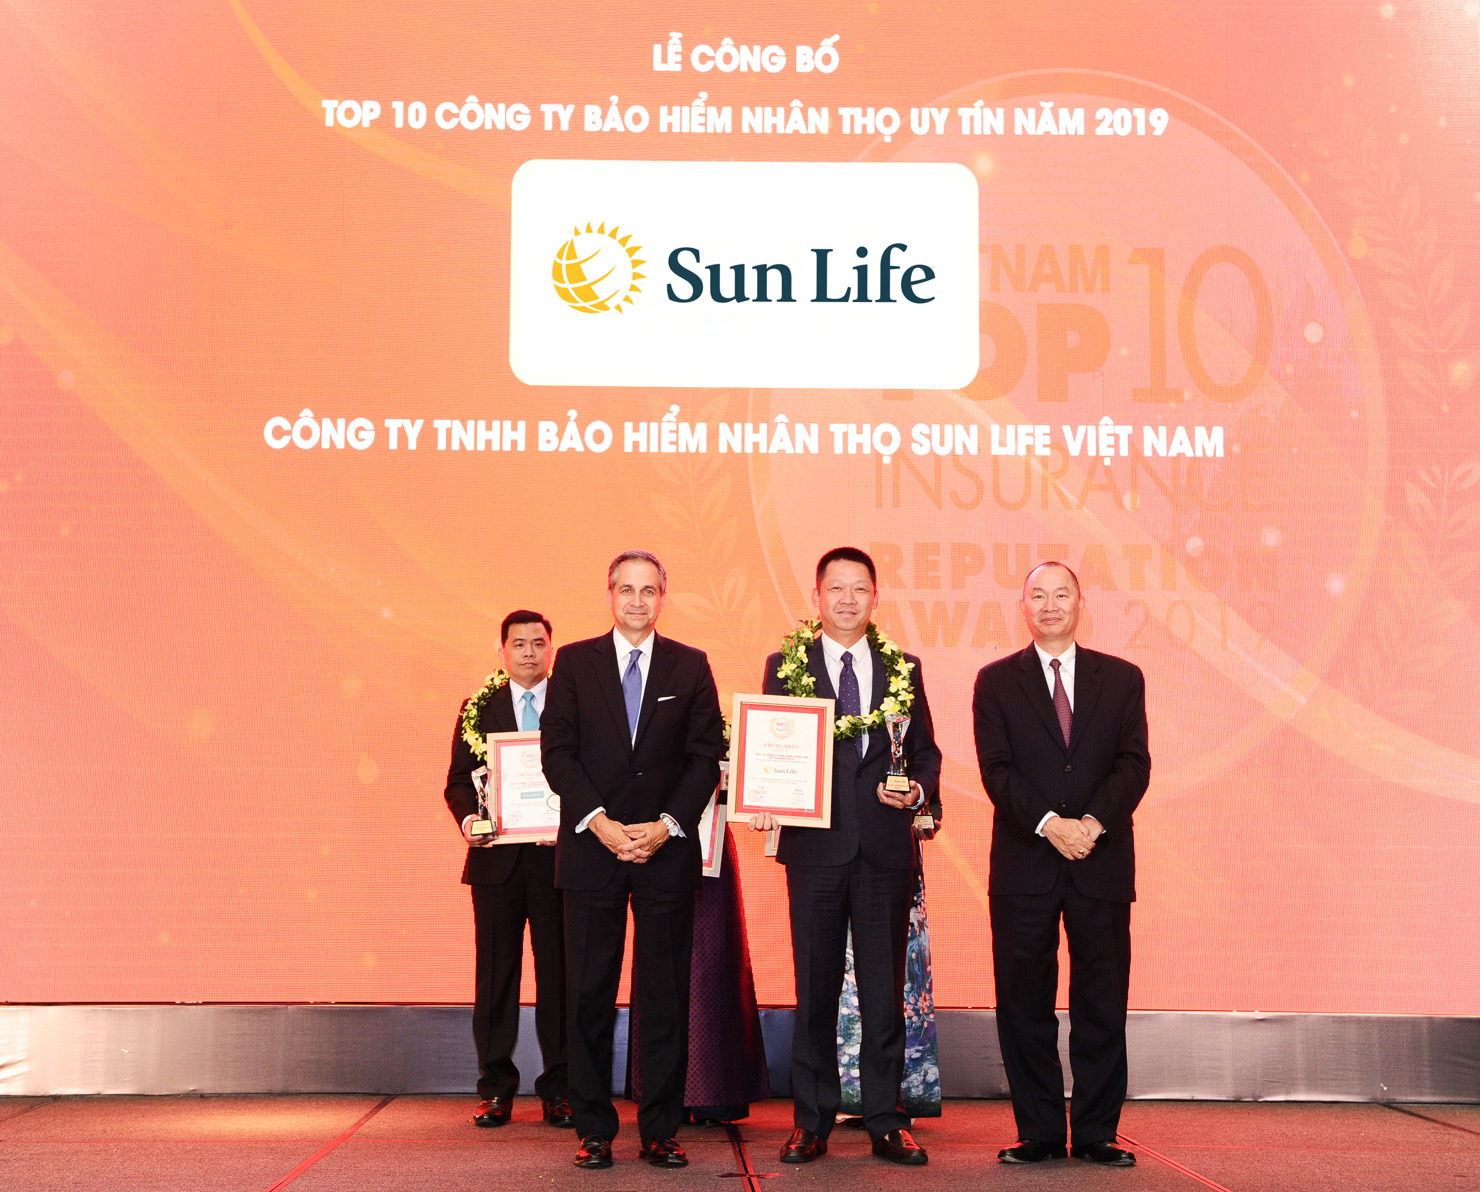 Đại diện Sun Life Việt Nam nhận chứng nhận Top 10 công ty bảo hiểm nhân thọ uy tín nhất Việt Nam năm 2019.